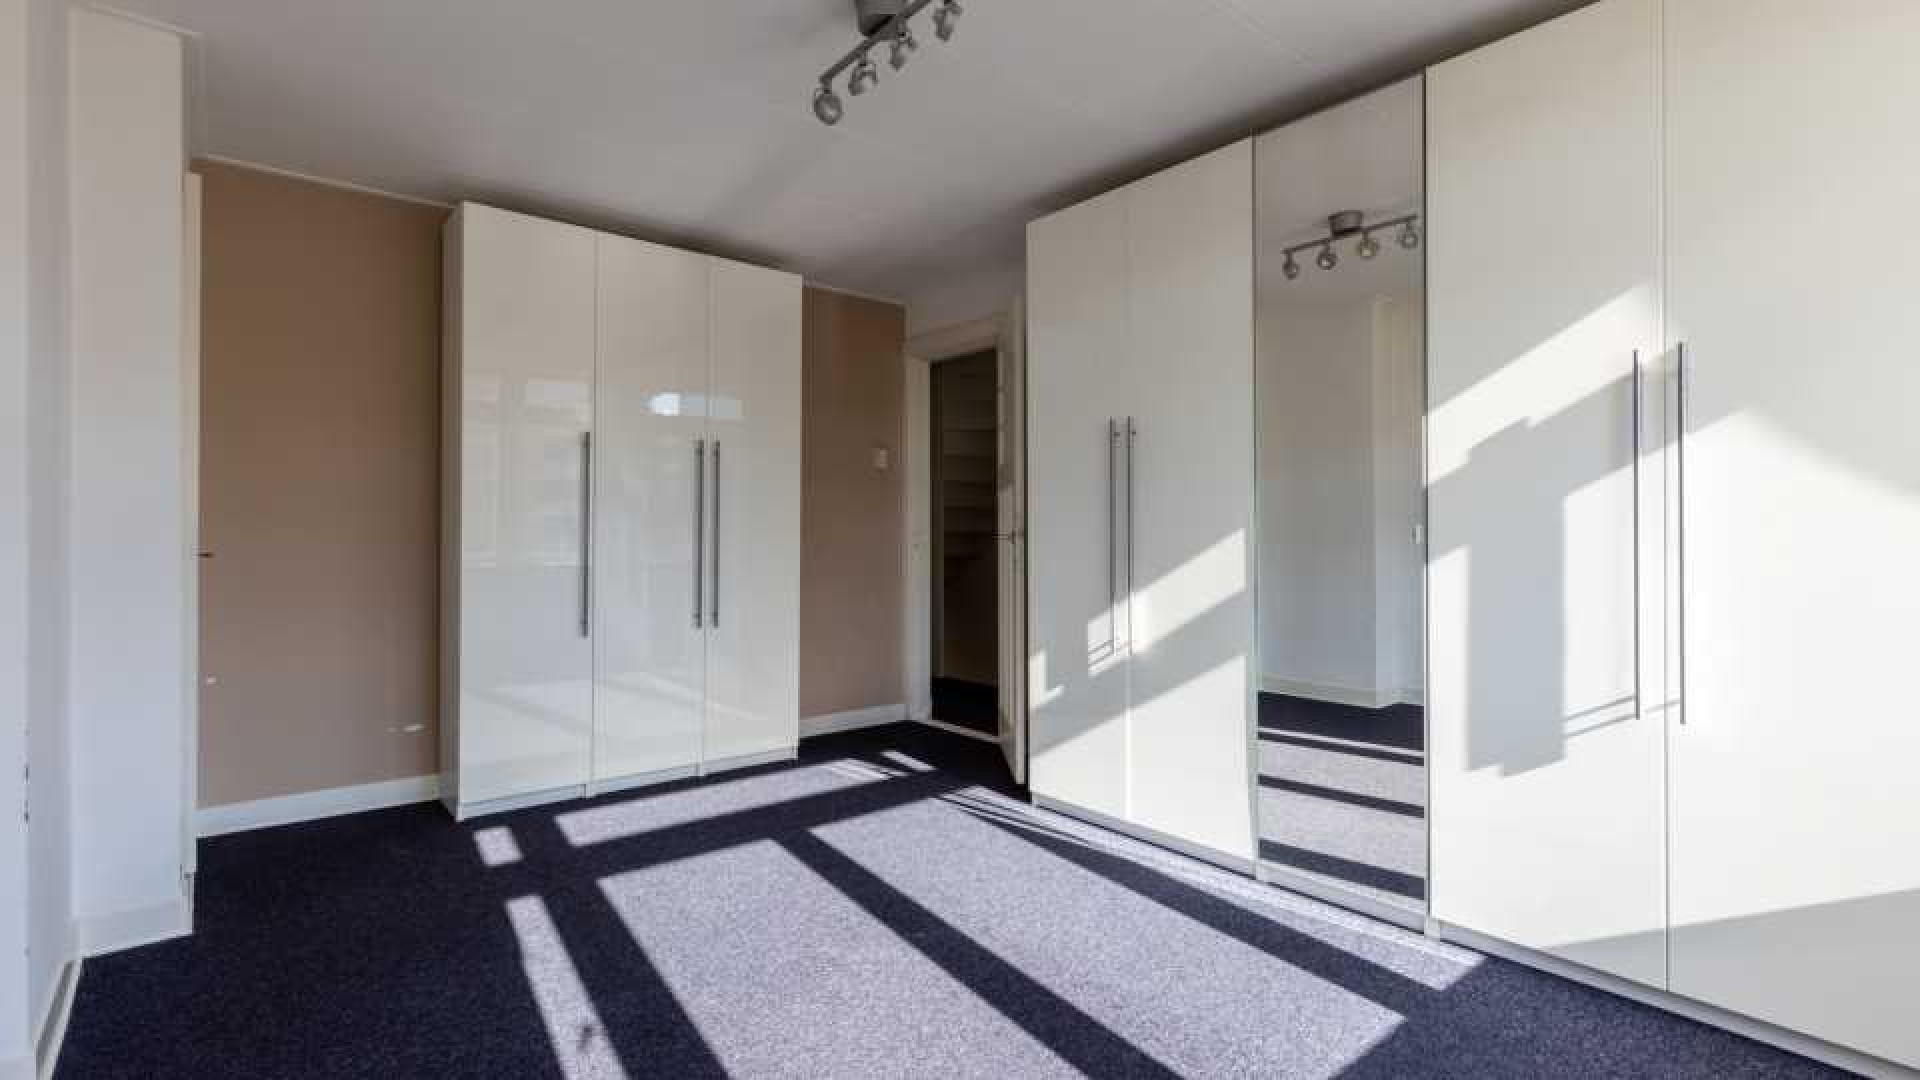 Dit is het nieuwe huur appartement van Patricia Paay in Rotterdam. Zie foto's 11